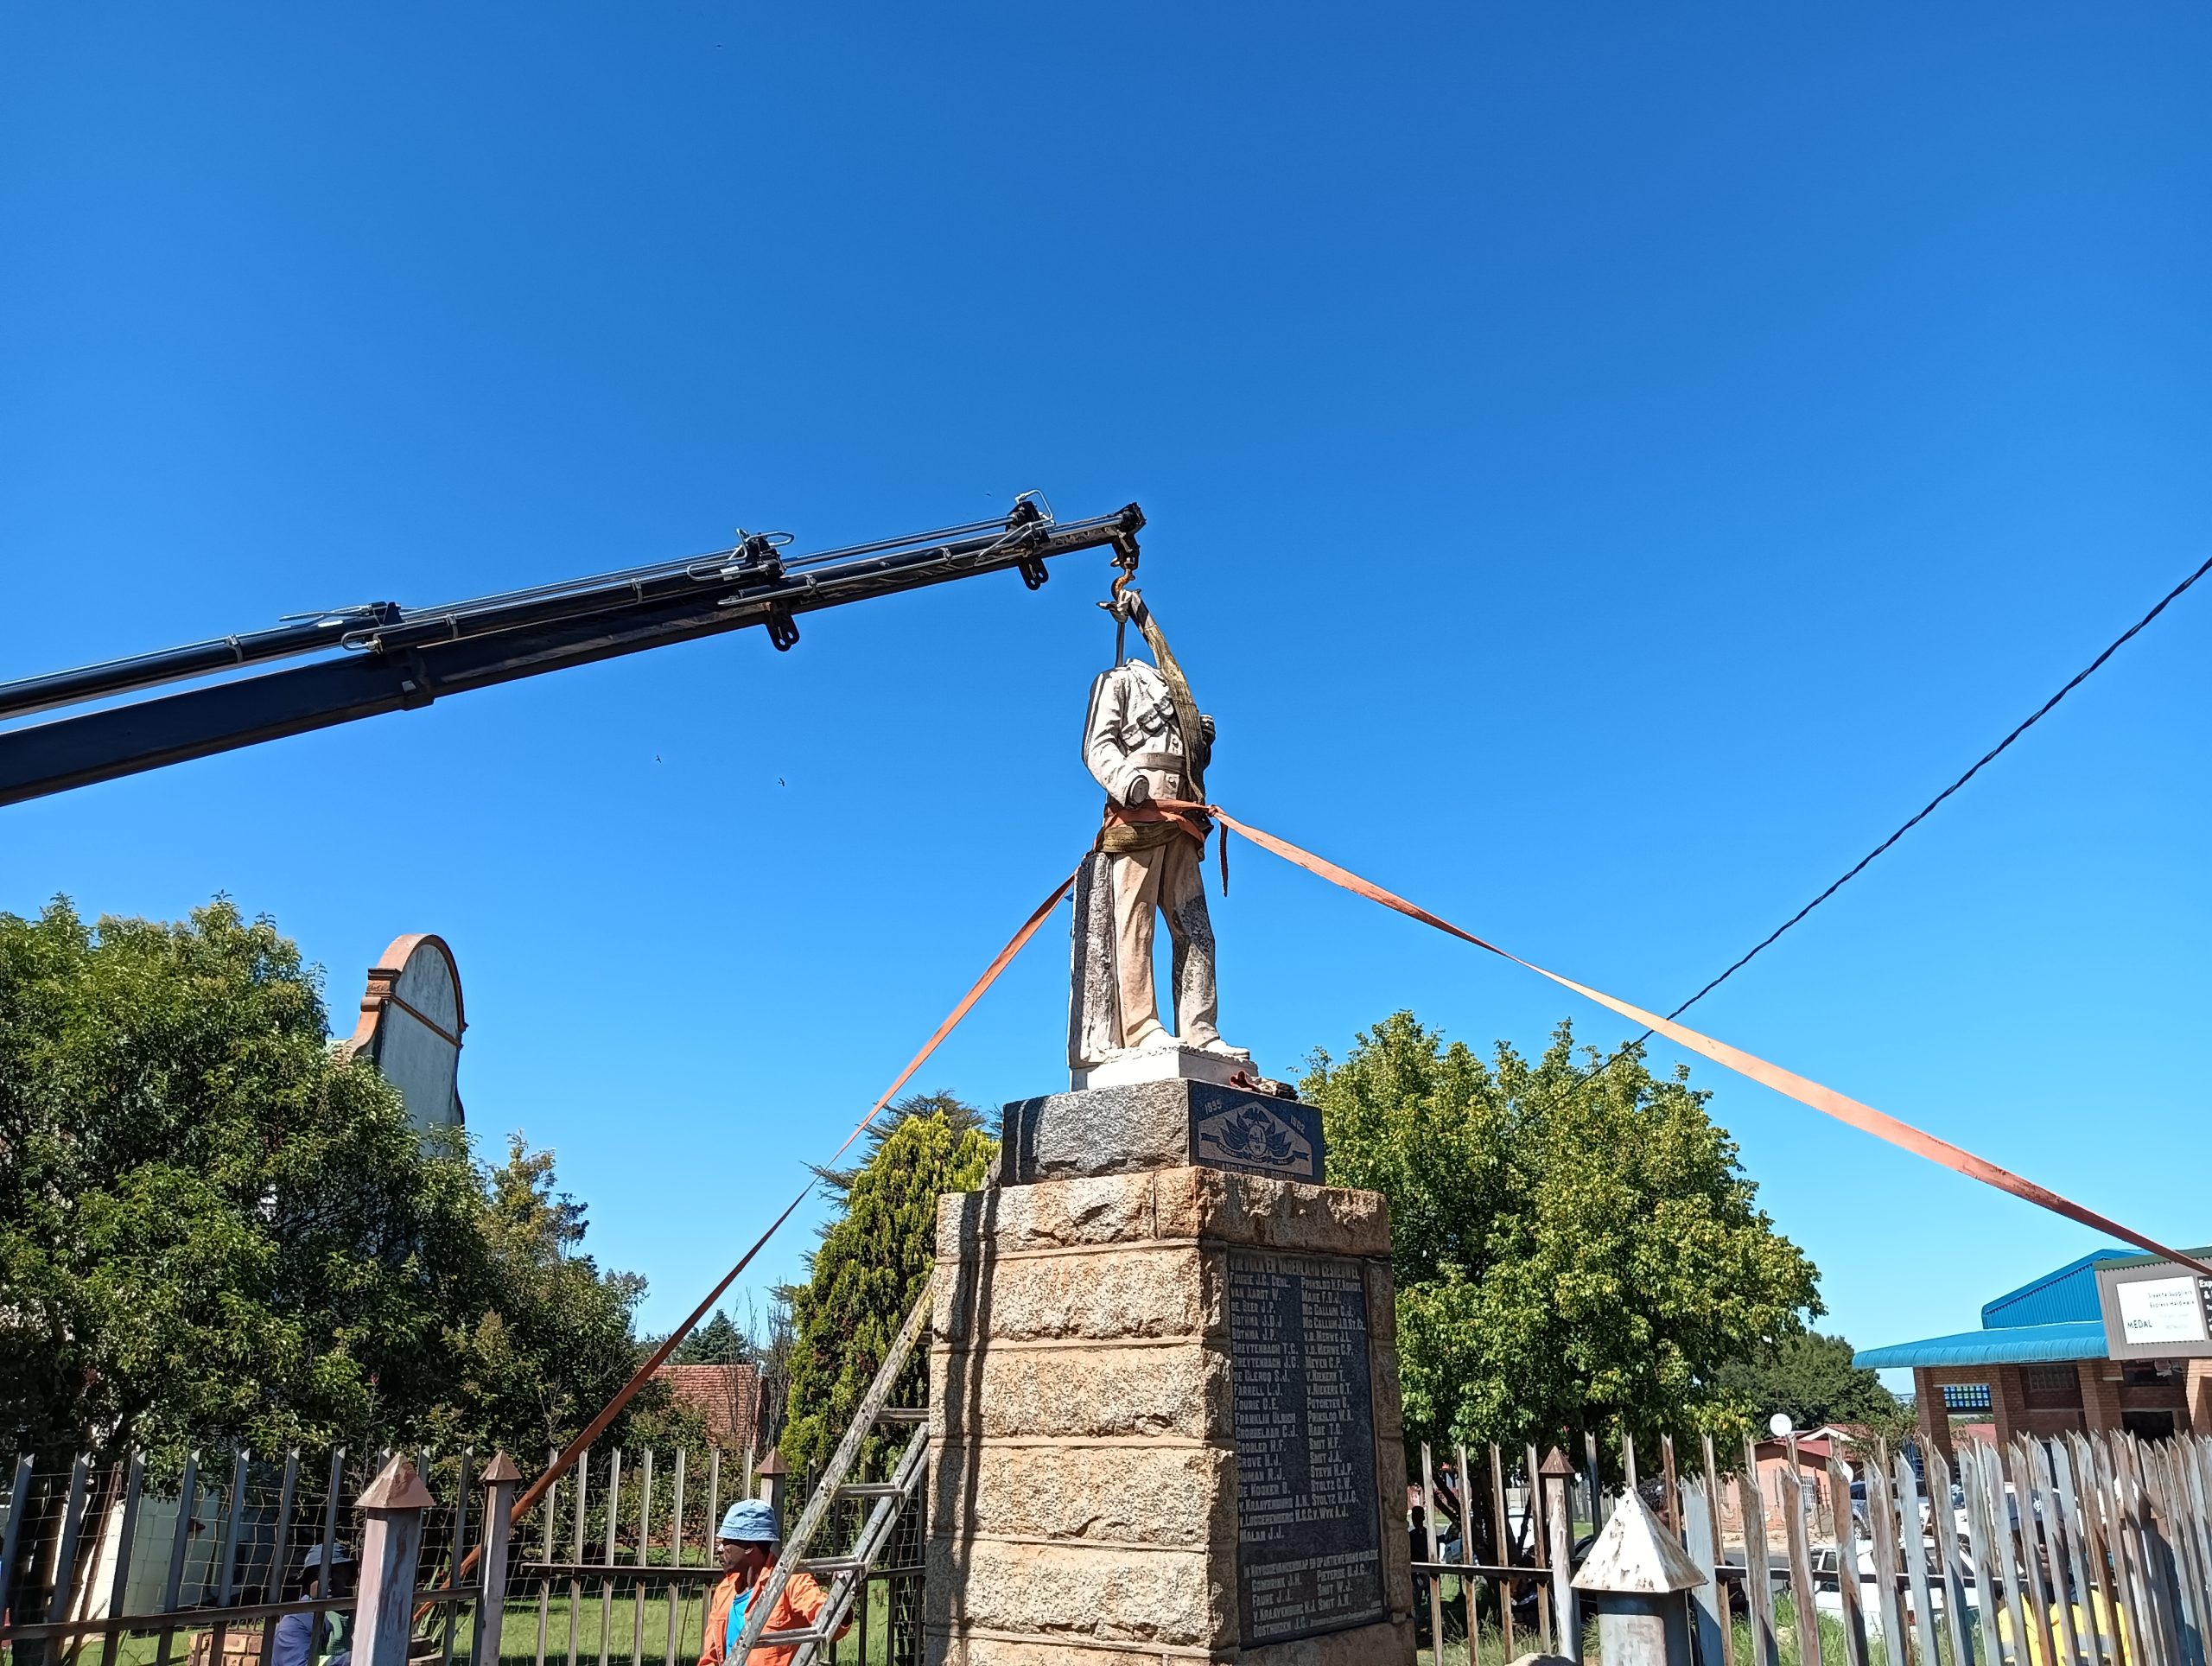 Herbou van monument in Carolina deur die FAK skep hoop vir erfenis in Suid-Afrika